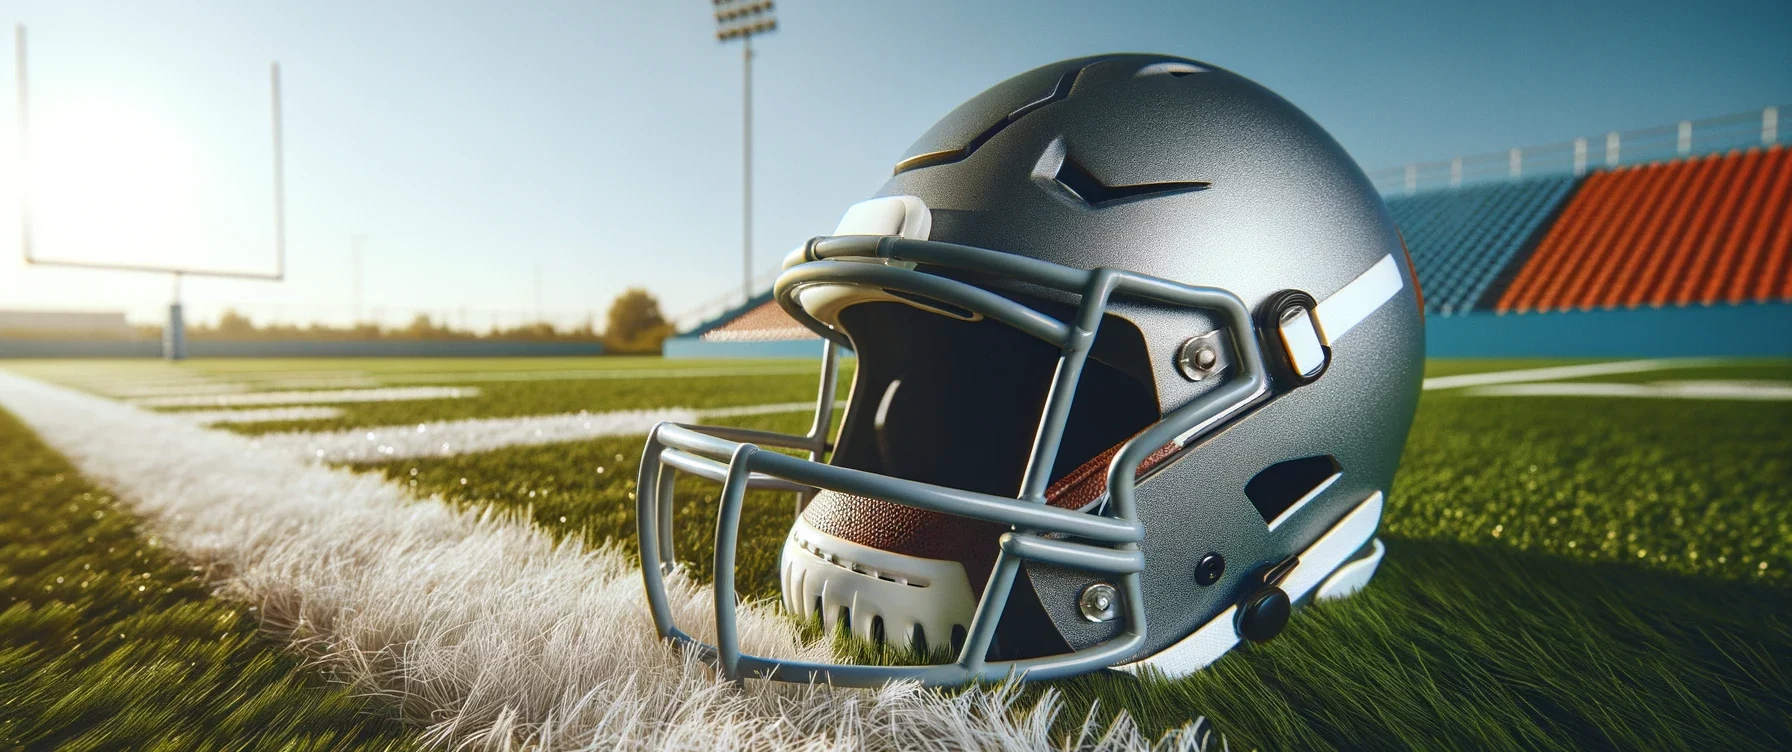 Foto eines American-Football-Helms auf einer Wiese mit weißen Linien, unter einem klaren blauen Himmel.